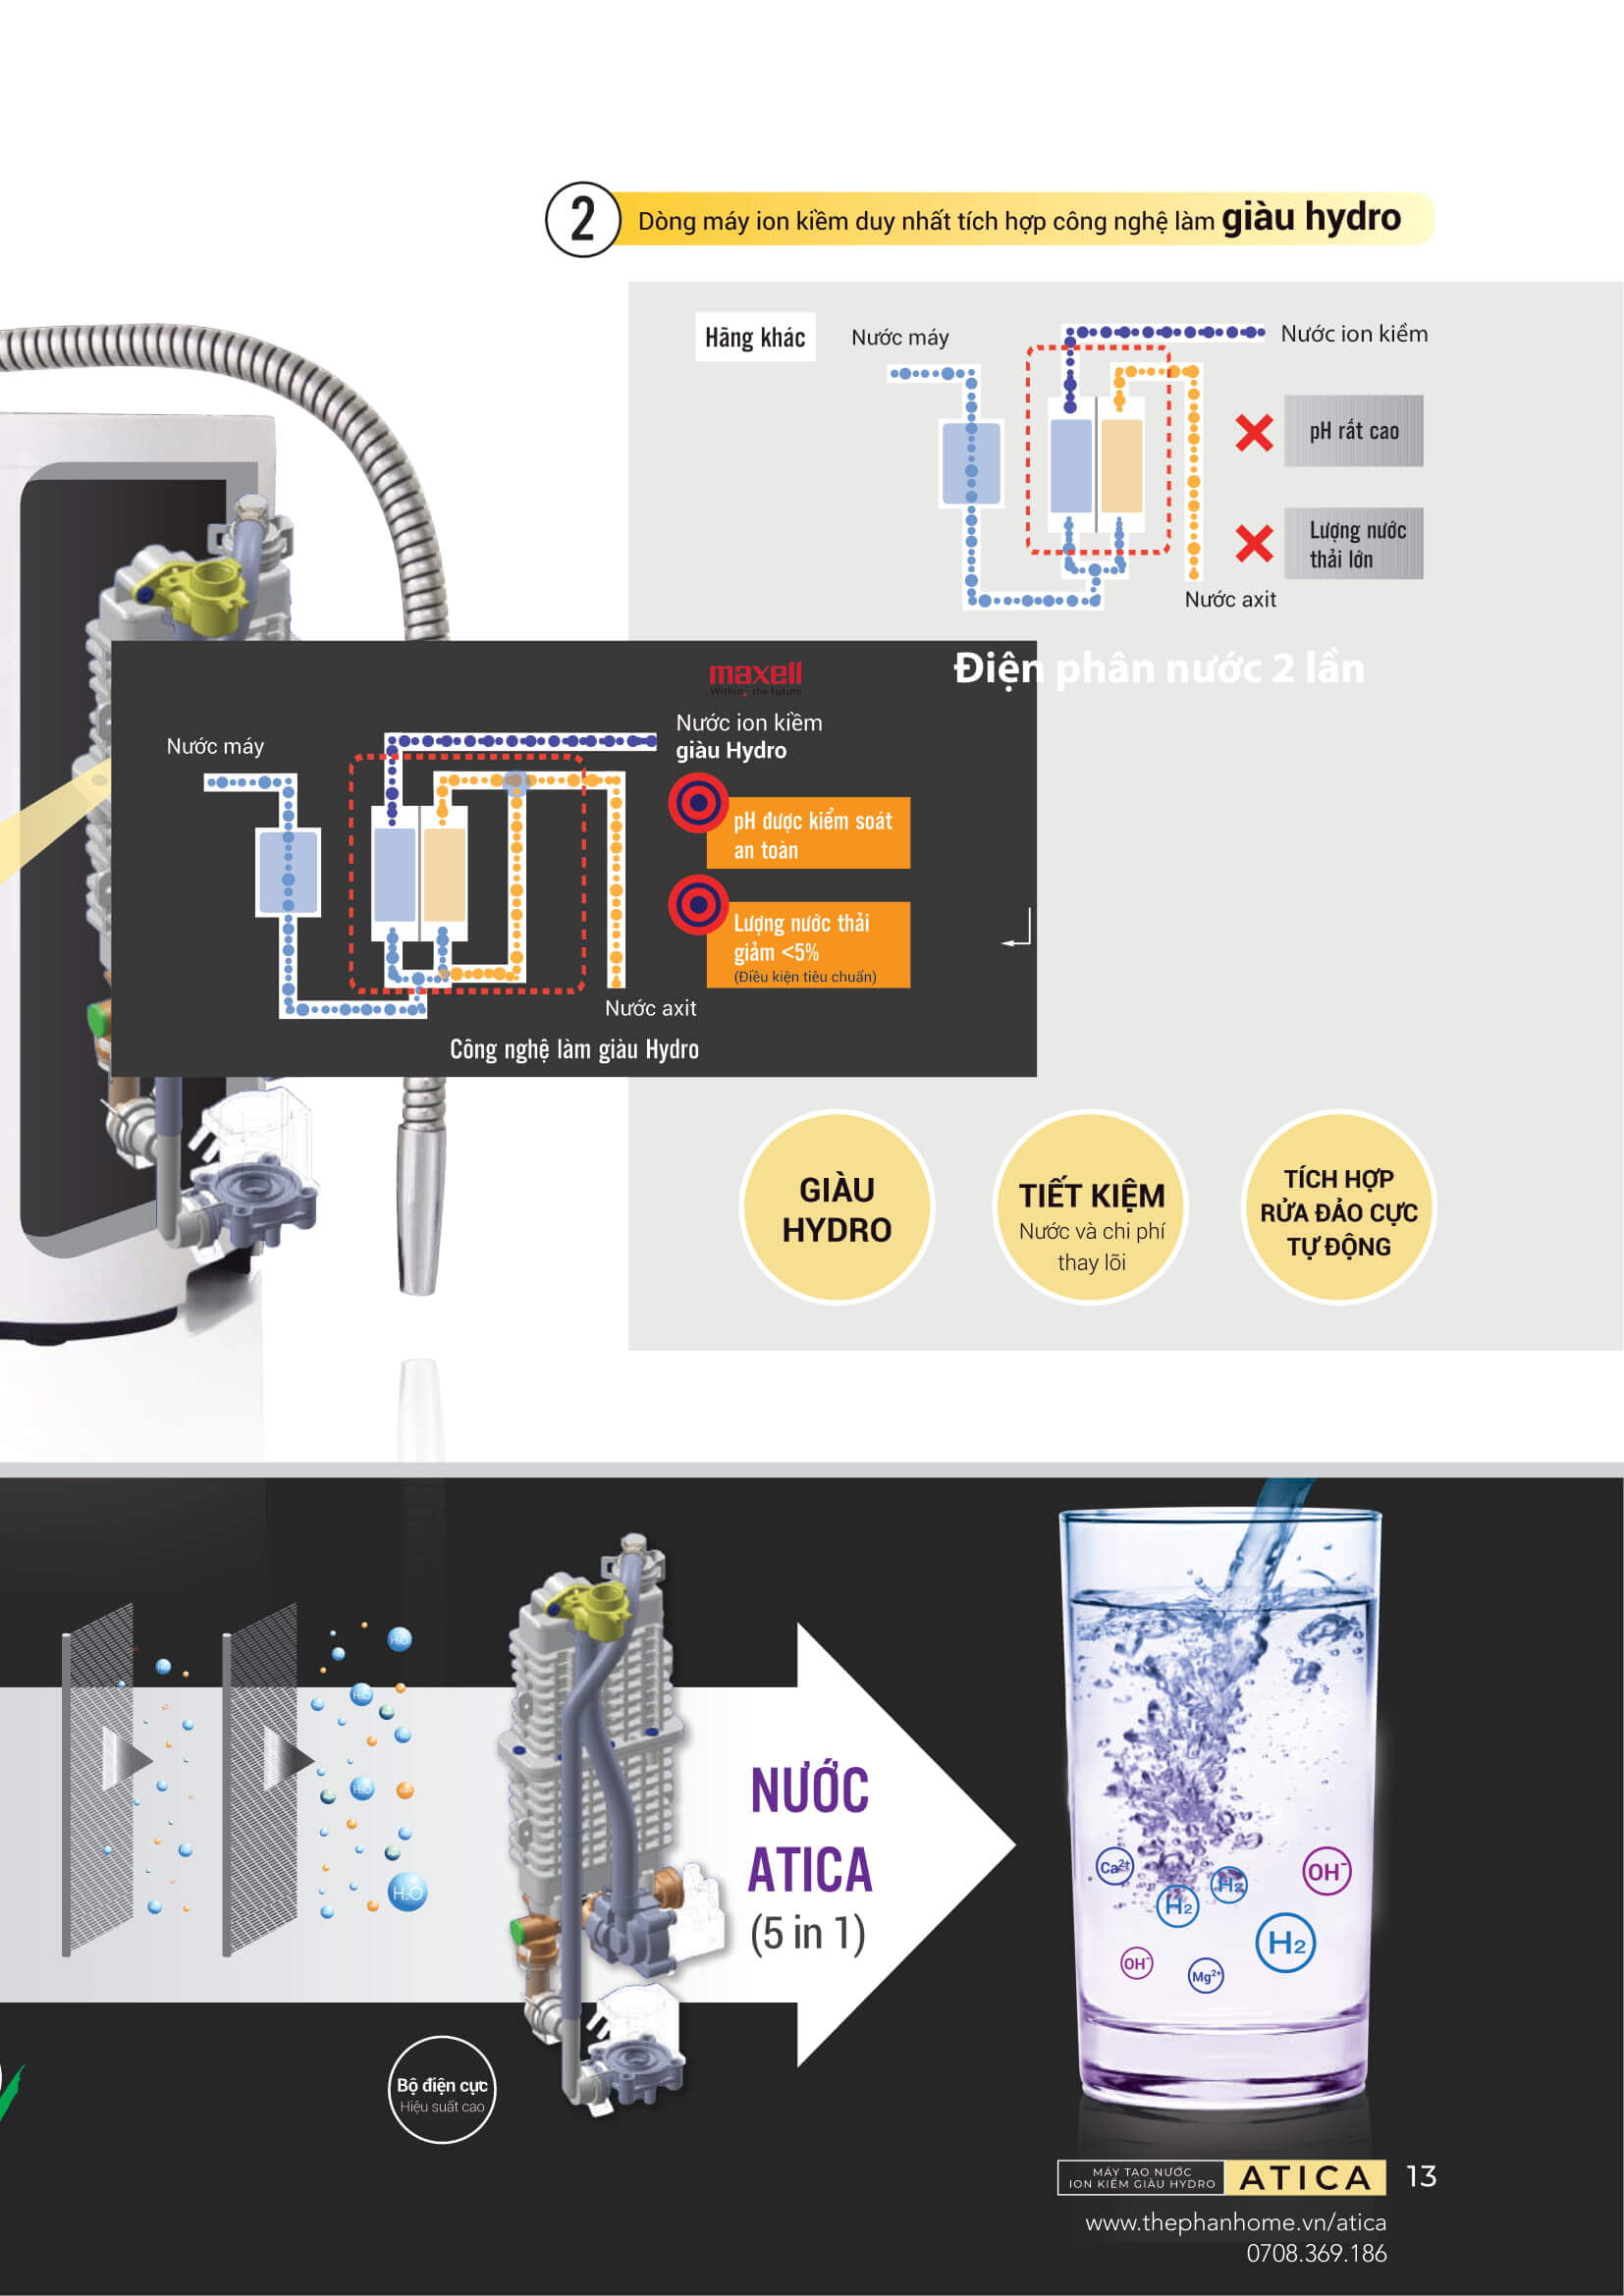 Máy Lọc Nước Điện Giải Ion Kiềm ATICA GOLD - Độc quyền công nghệ điện phân nước 2 lần